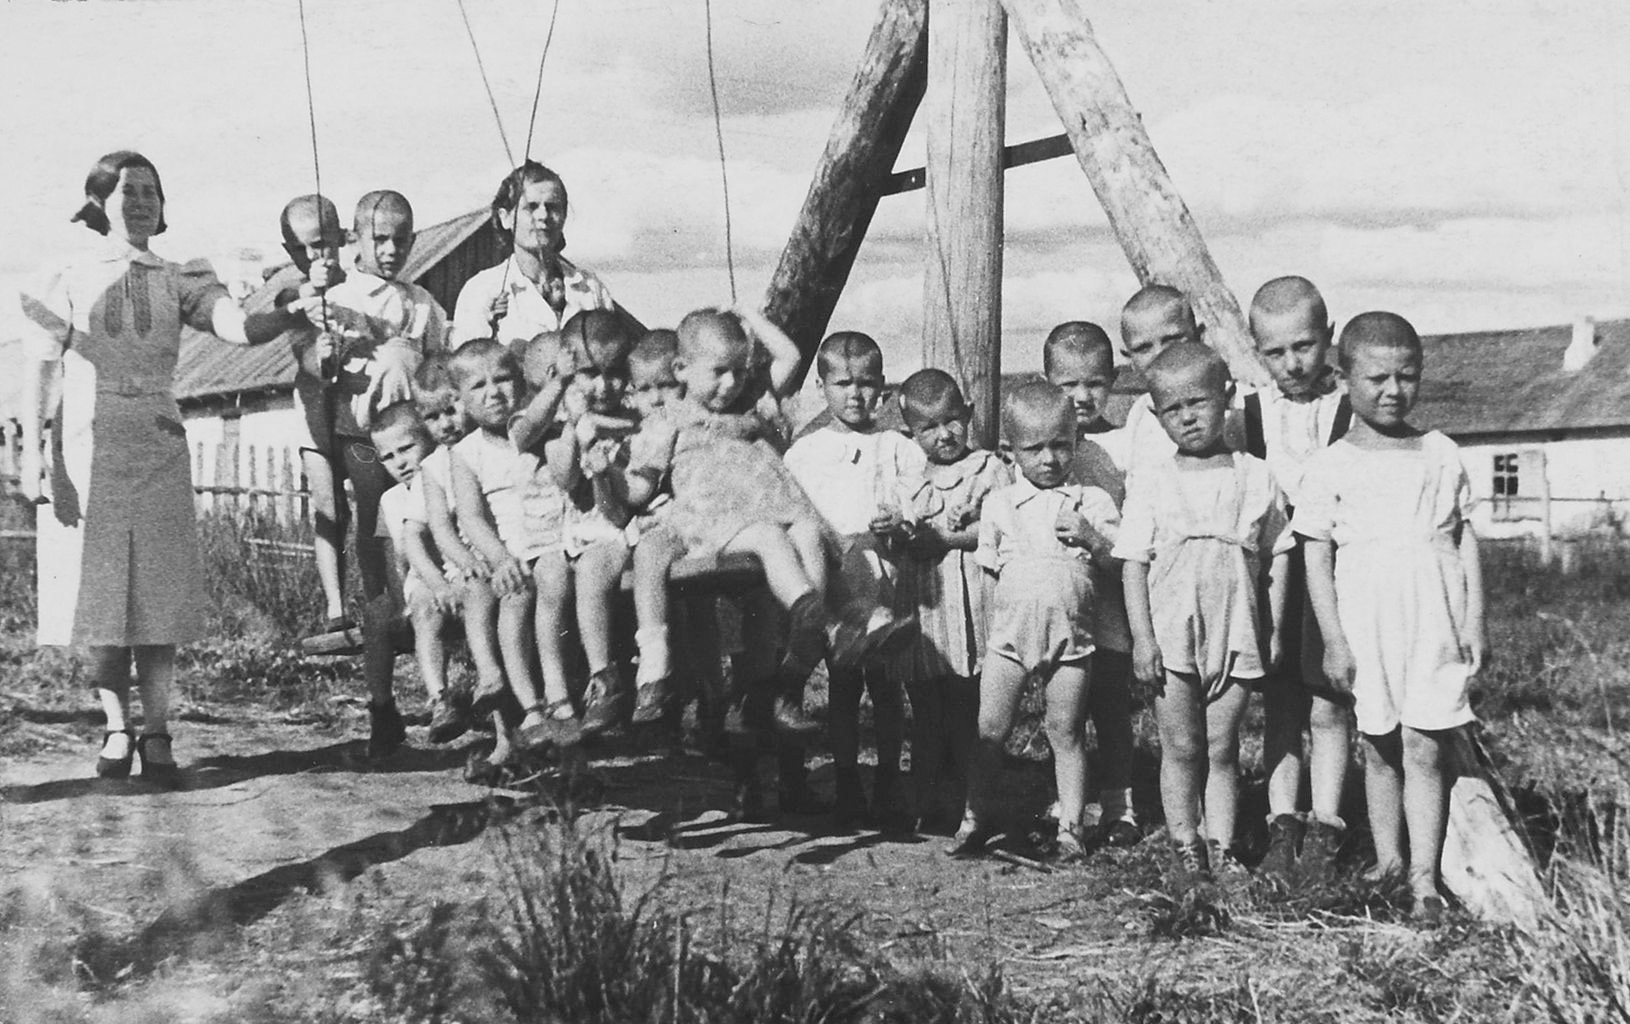 Фотография из фотоальбома «Дом ребенка Каргопольского исправительно-трудового лагеря». 1945 г. Из фондов ГА РФ